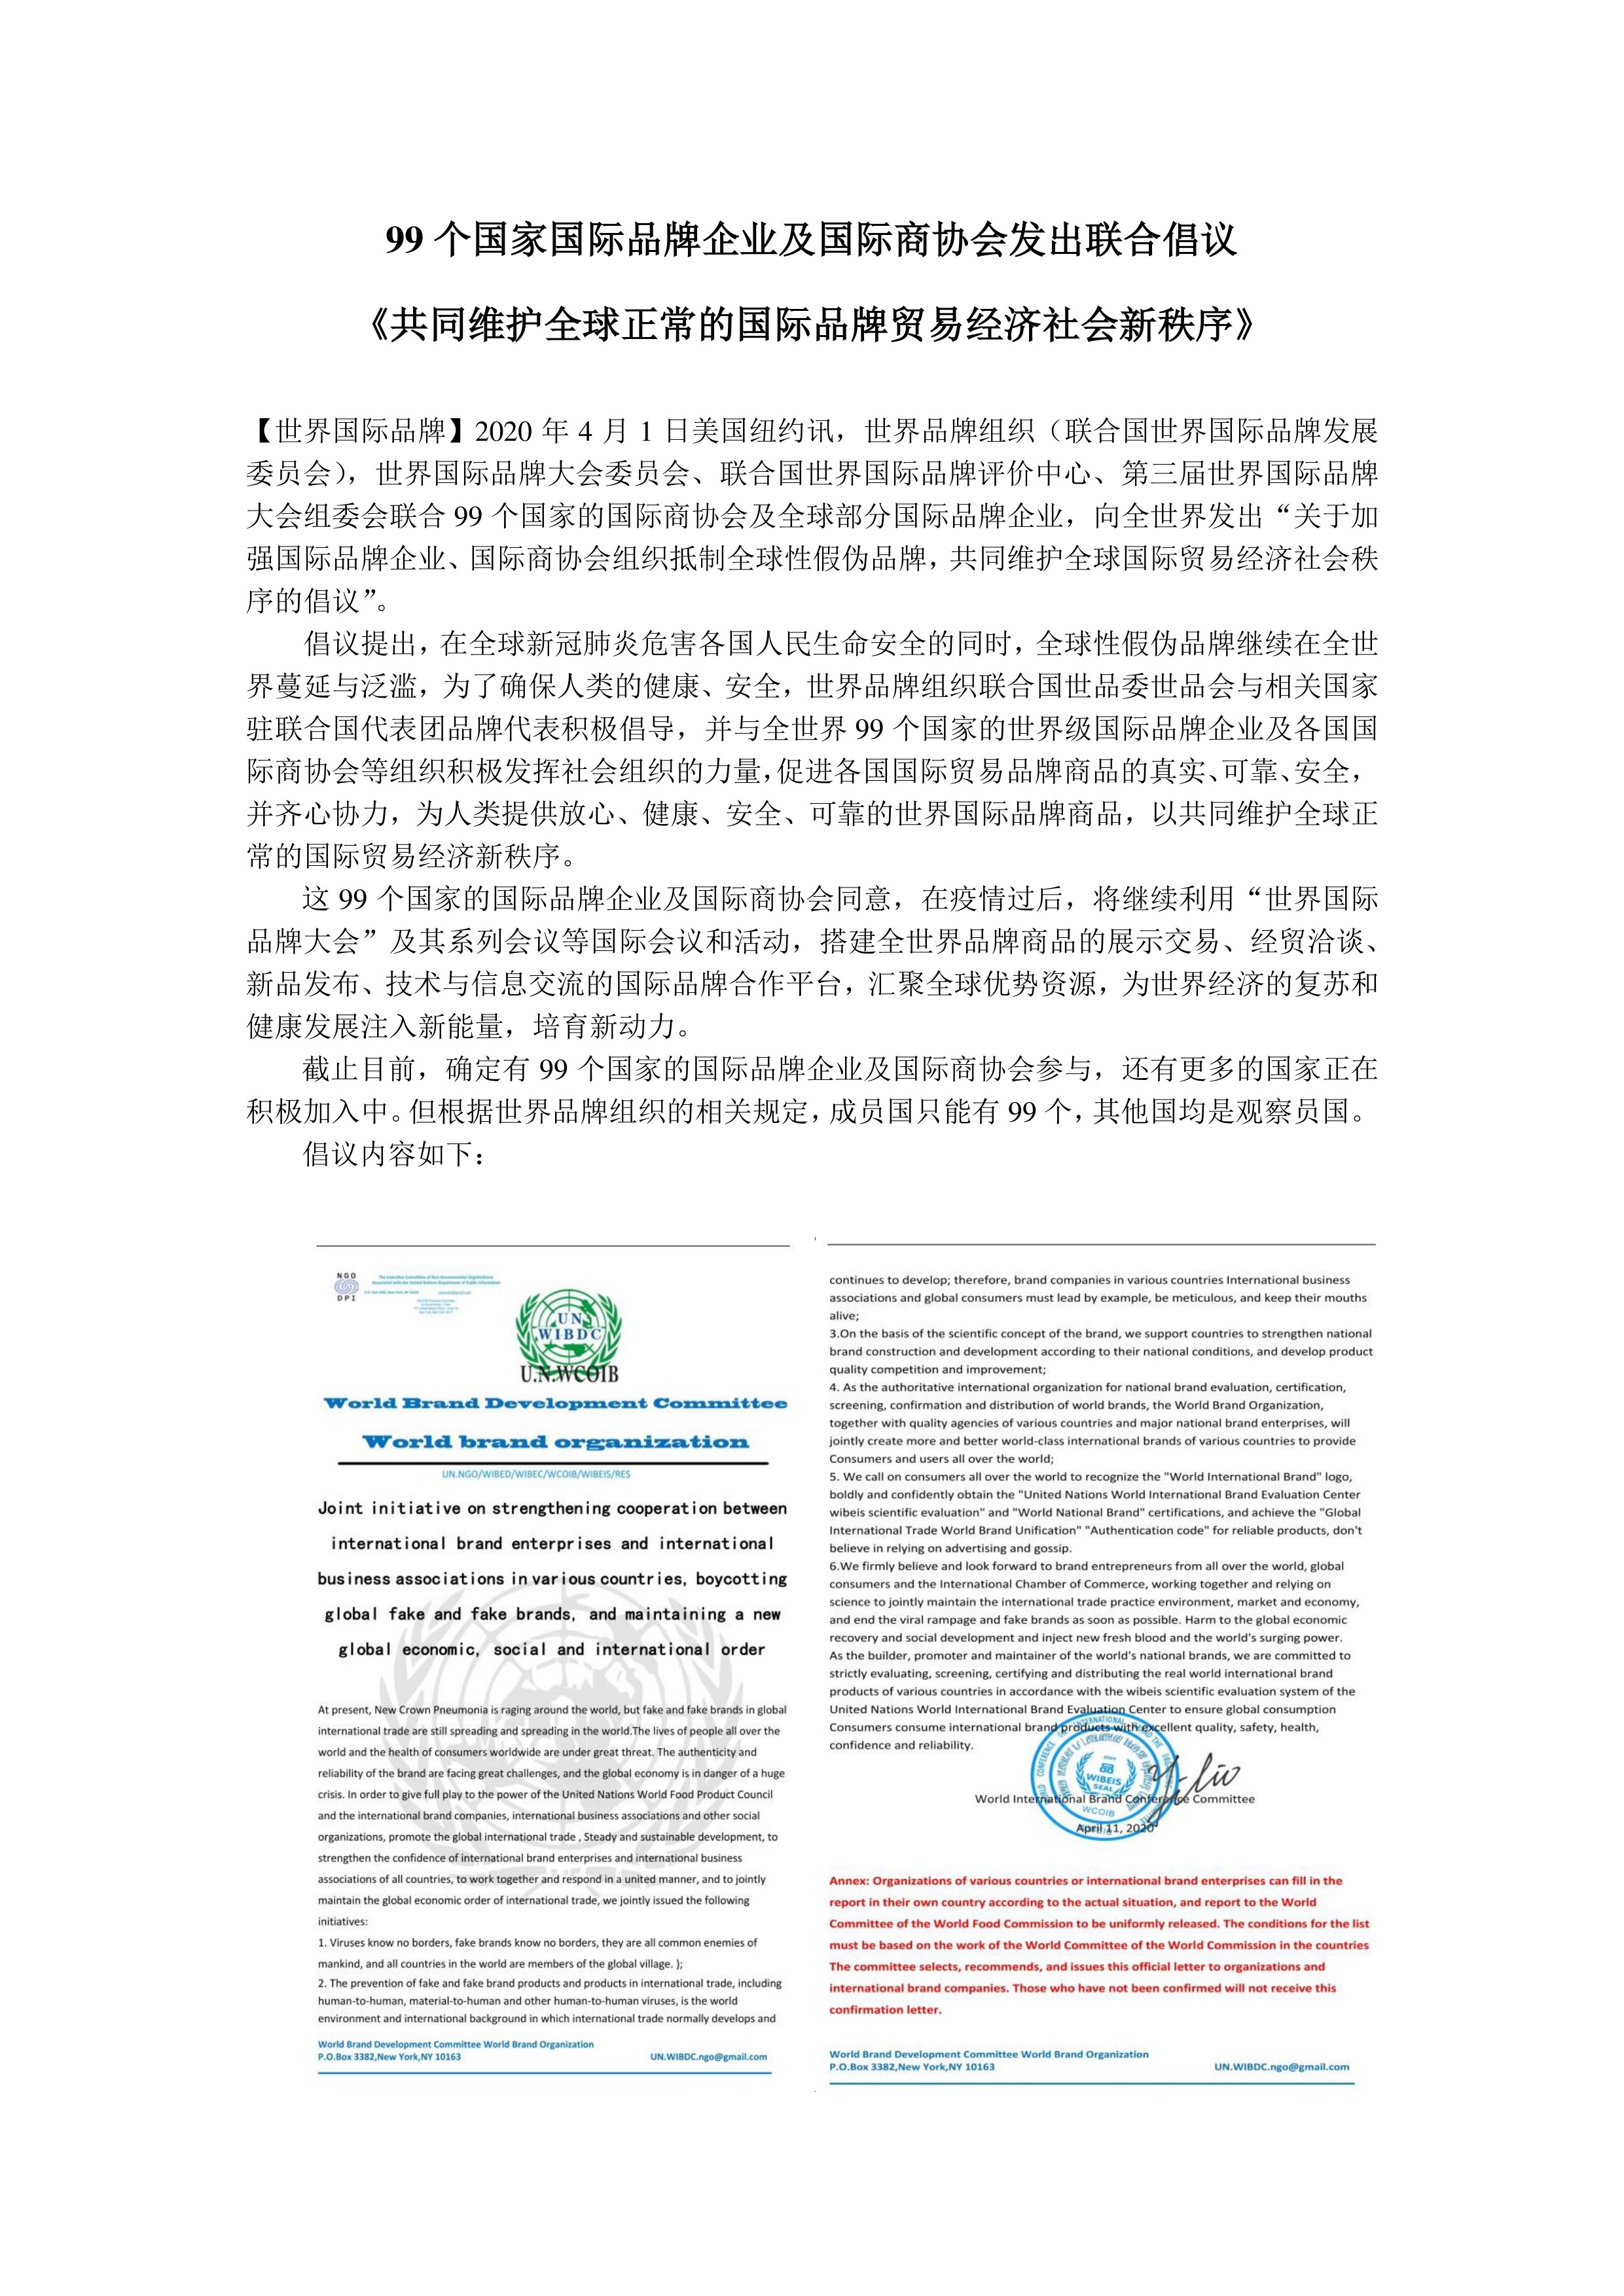 99个国家国际商协会发出联合倡议1.pdf_1.jpg